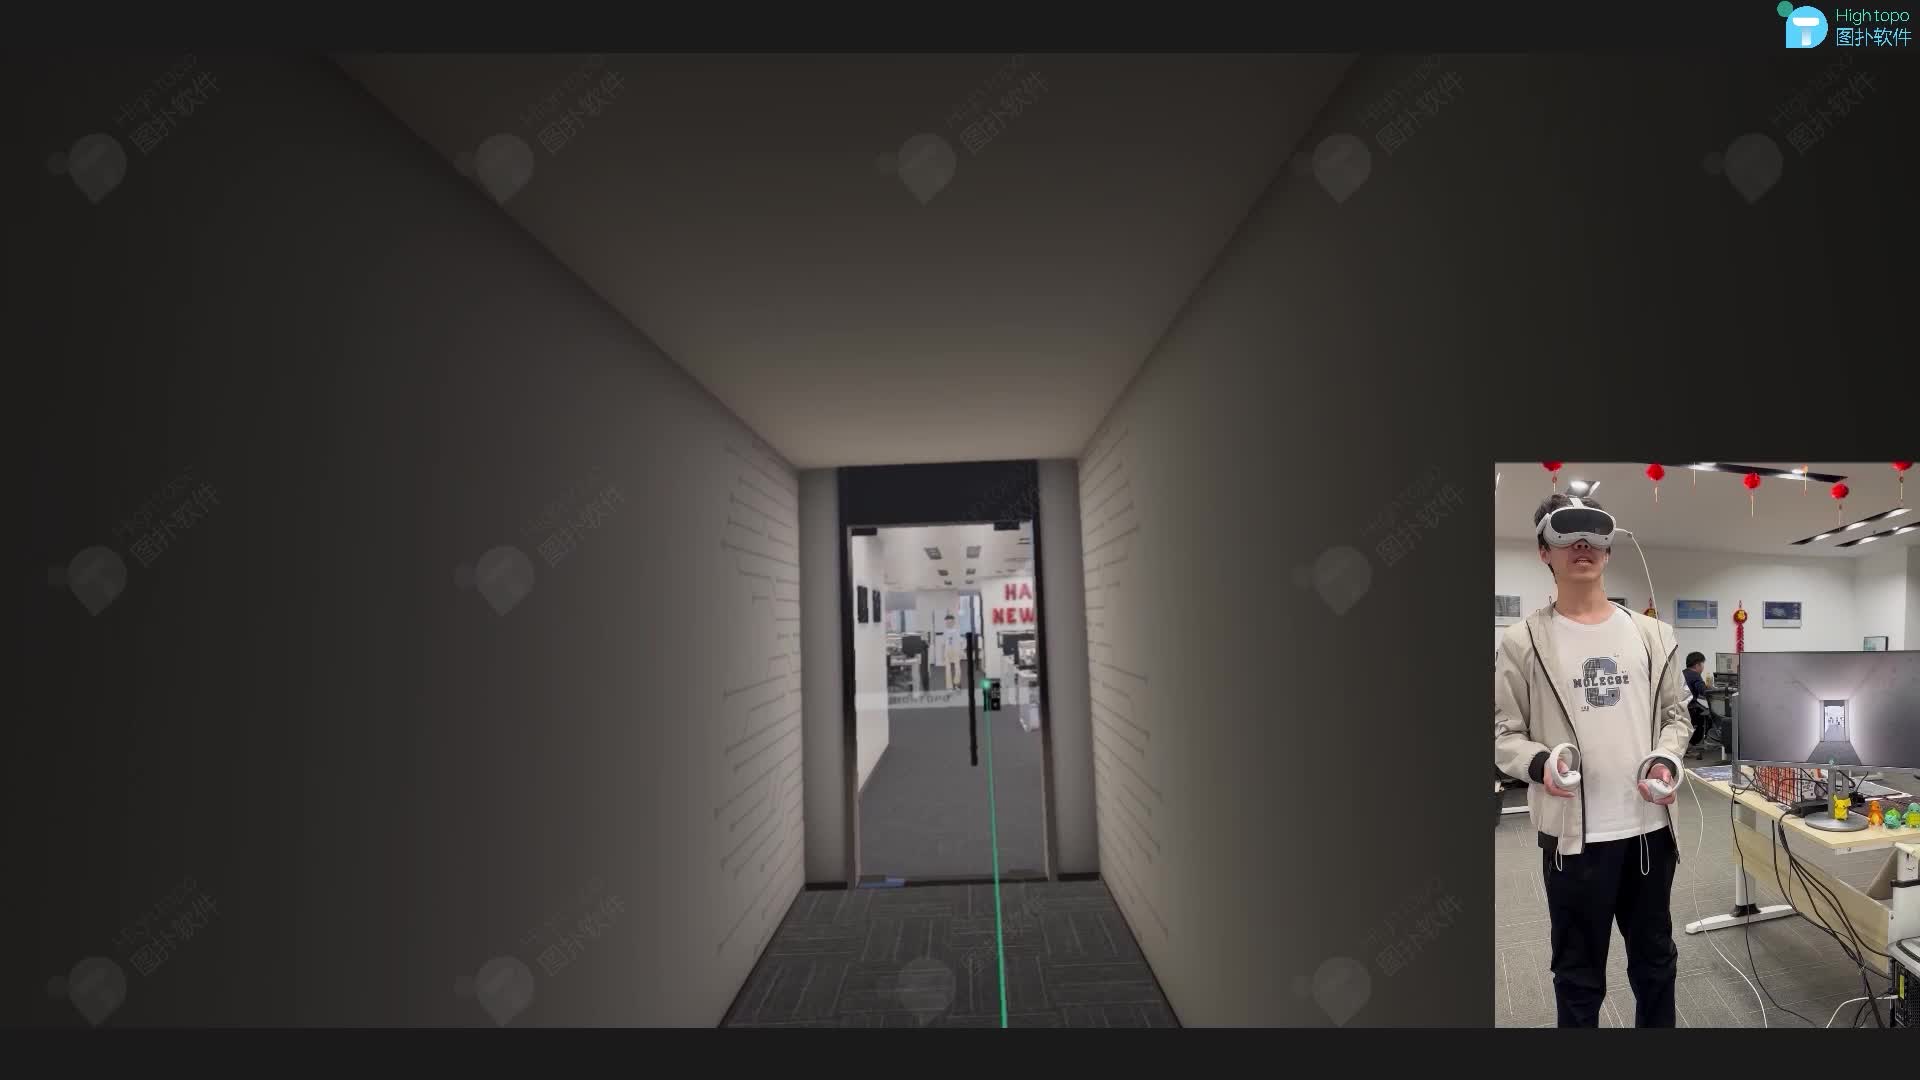 虚拟现实 VR 智慧办公室可视化监控 #数字孪生 #三维可视化 #VR #虚拟现实 